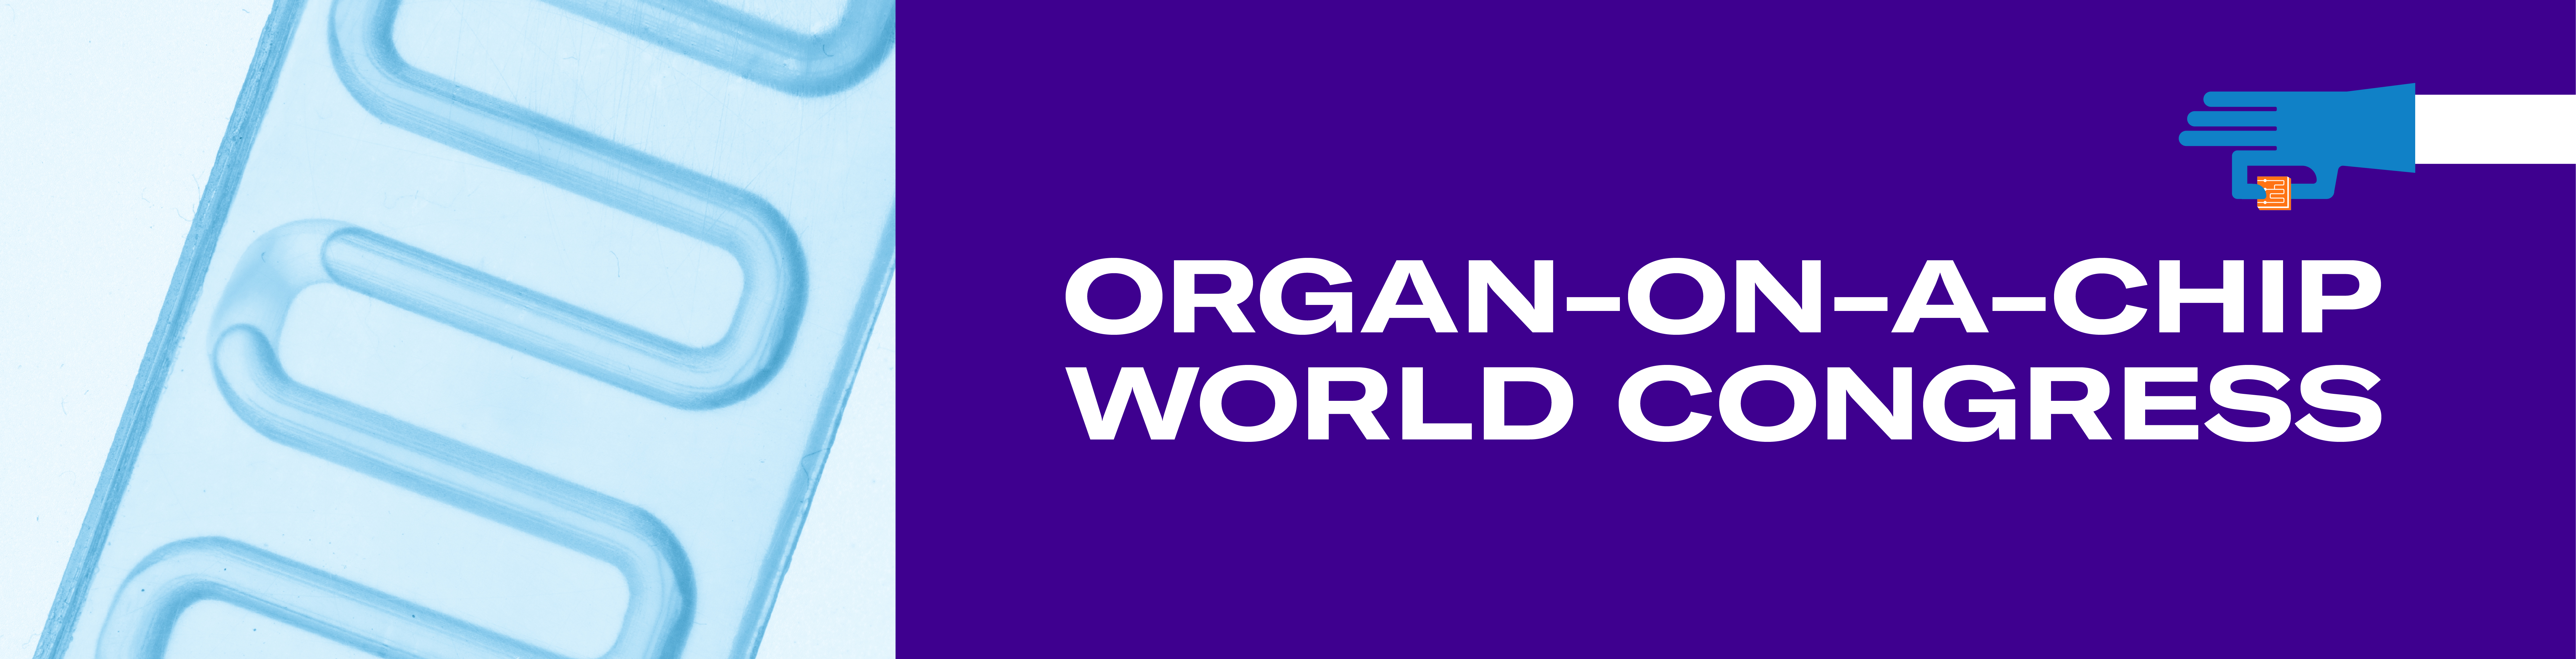 Organ-On-A-Chip World Congress 2020